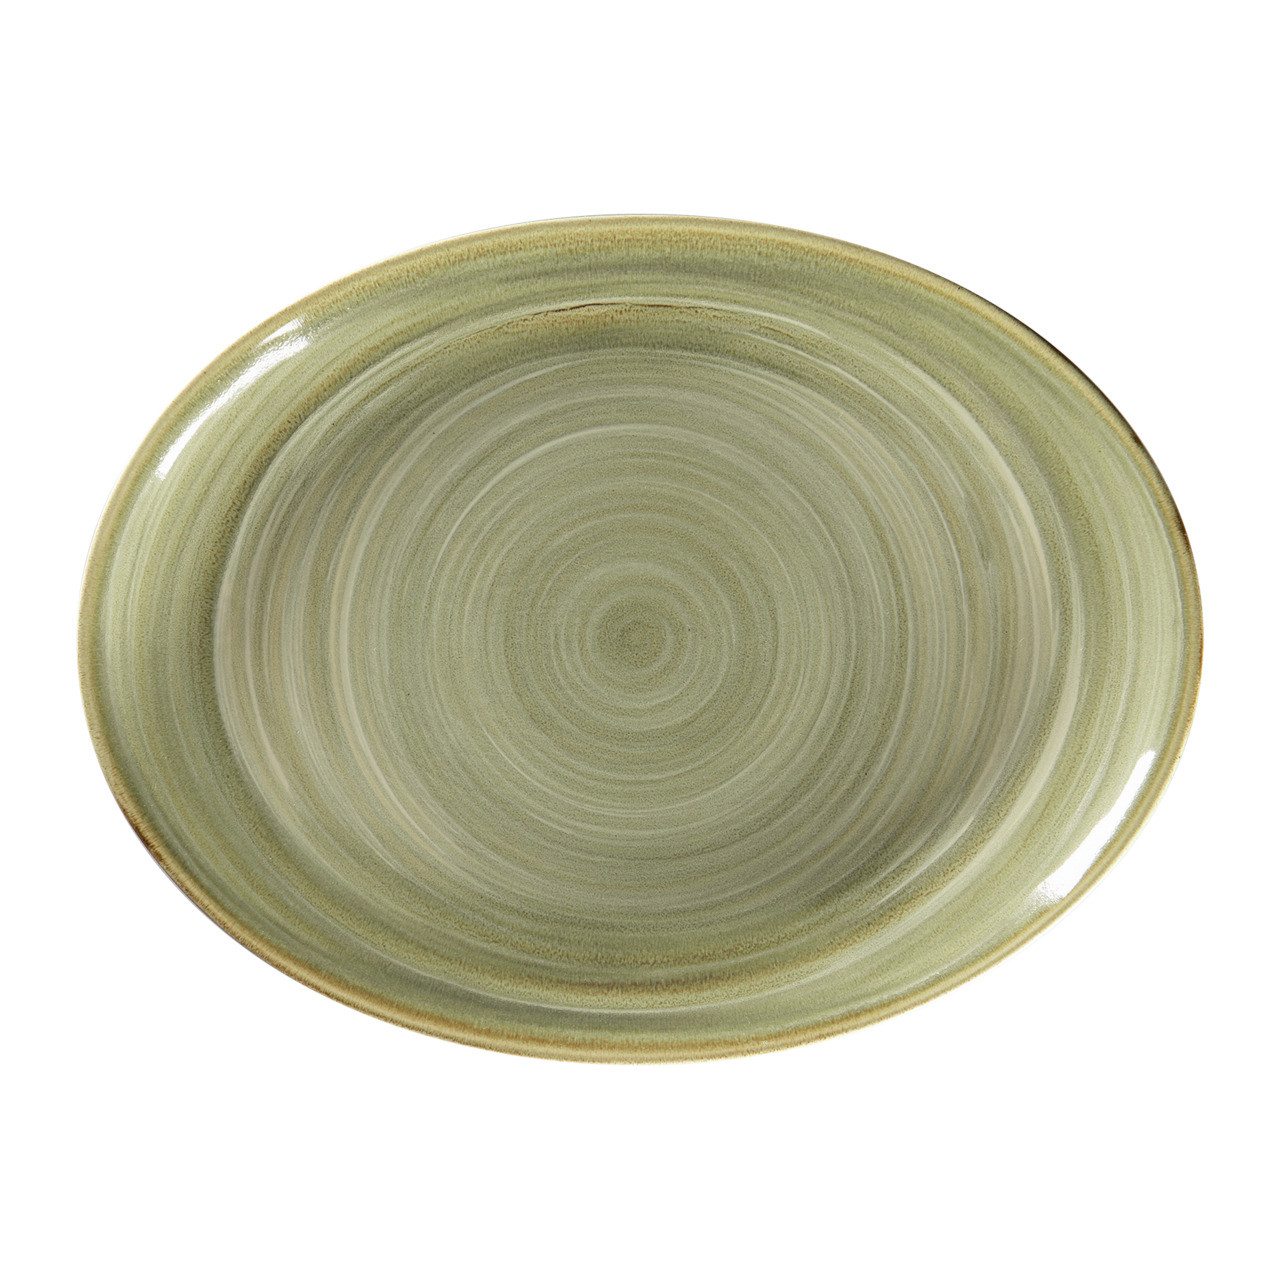 Spot, Platte oval 360 x 270 mm emerald green